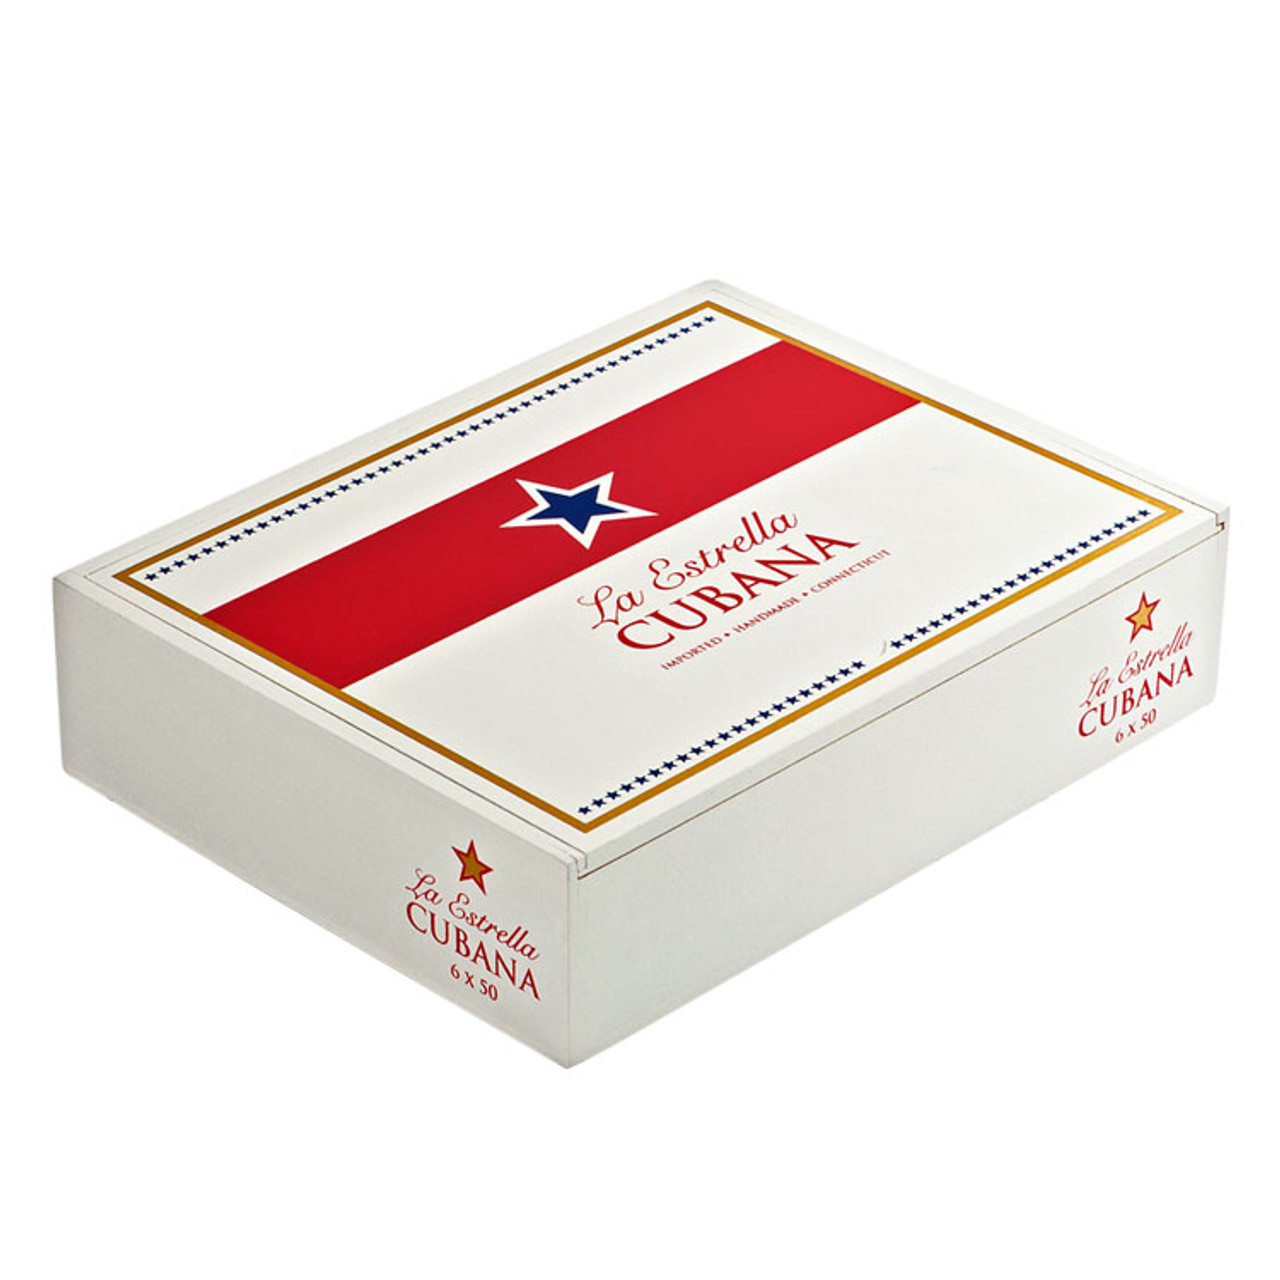 La Estella Cubana Connecticut Toro Cigars - 6 x 50 (Box of 20) *Box